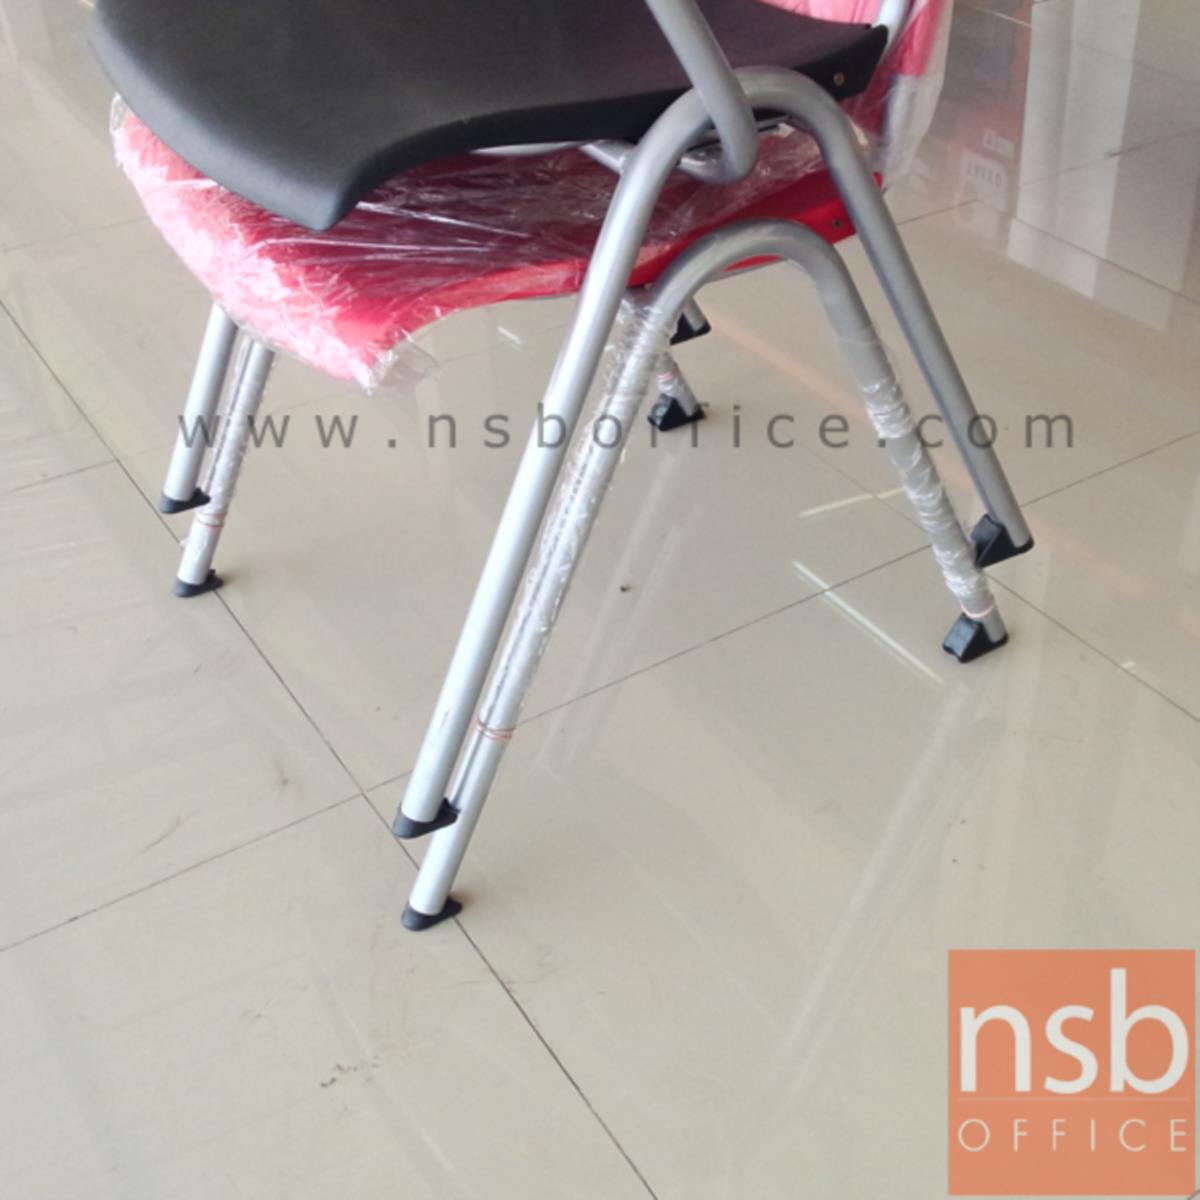 เก้าอี้อเนกประสงค์เฟรมโพลี่ รุ่น Mozen (โมเซน)  ขาเหล็กพ่นสีเทาเมทัลลิค 